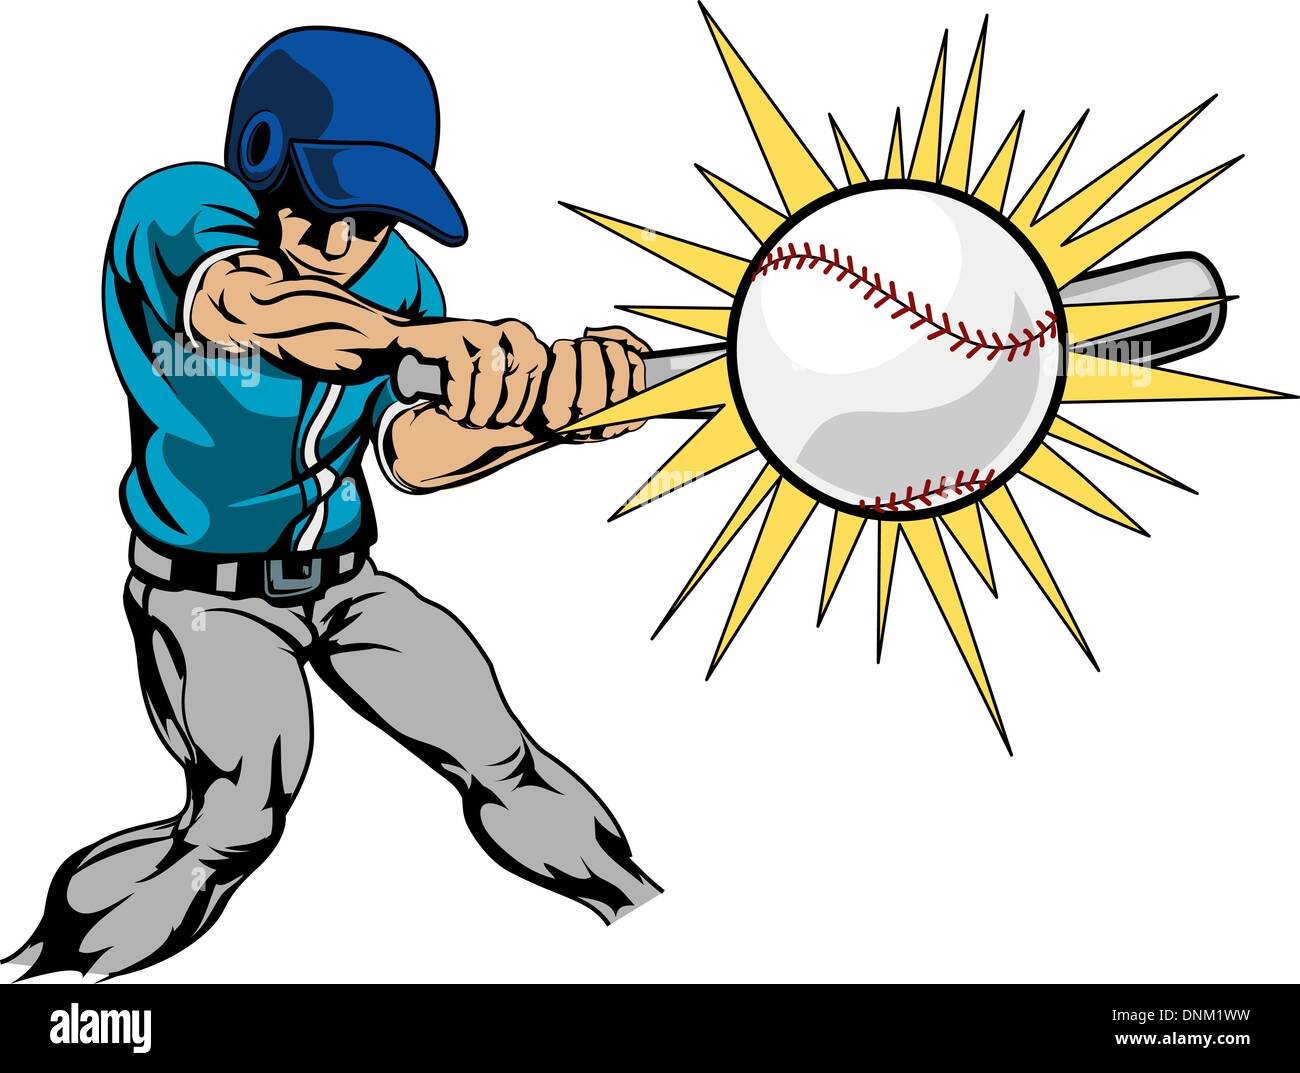 Illustrazione del giocatore di baseball bat oscillante per colpire il baseball Illustrazione Vettoriale